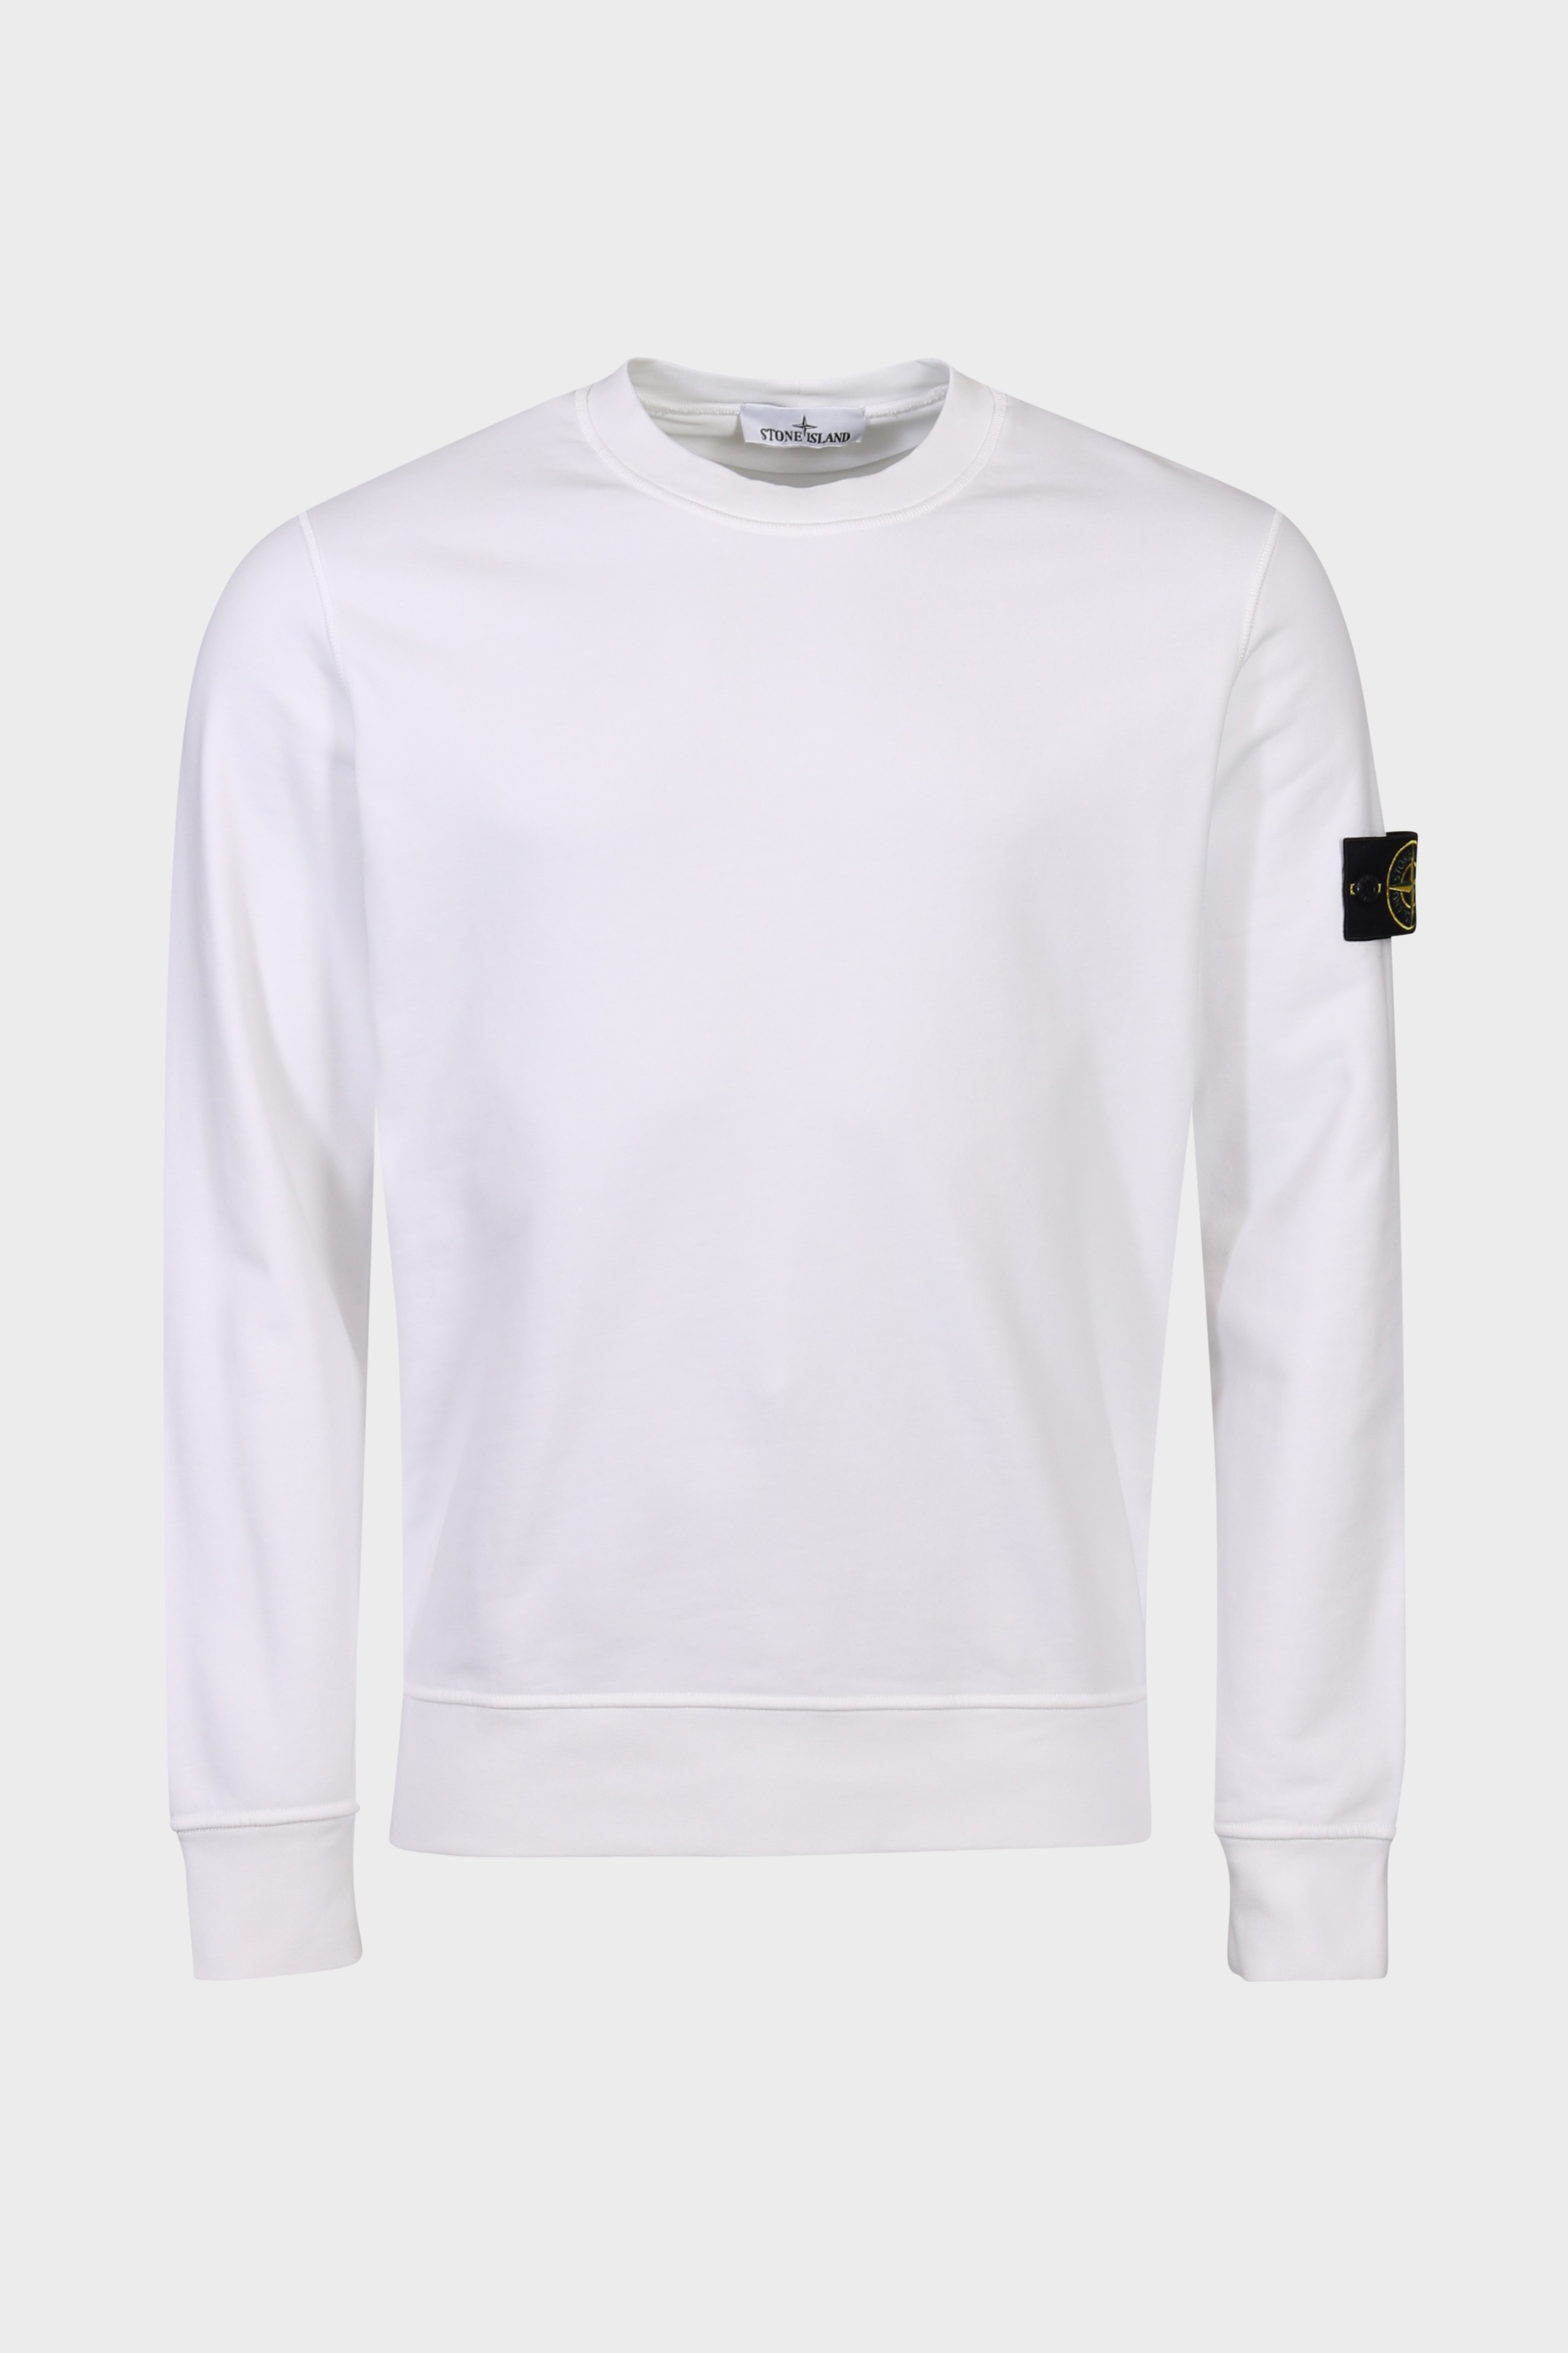 STONE ISLAND Sweatshirt in White S